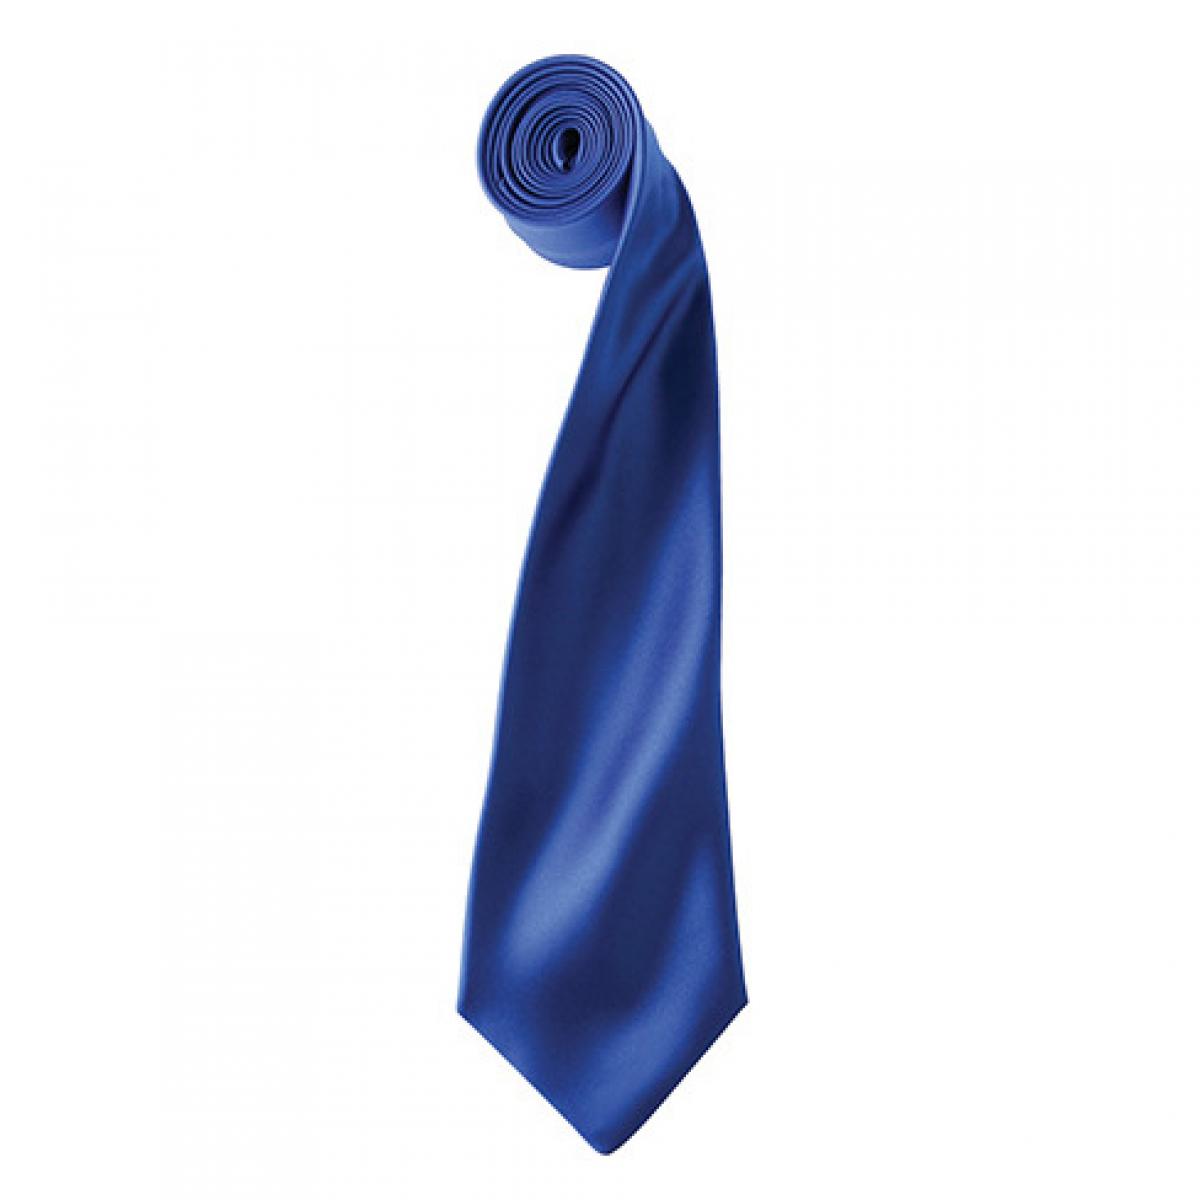 Hersteller: Premier Workwear Herstellernummer: PR750 Artikelbezeichnung: Satin Tie ´Colours´ / 144 x 8,5 cm Farbe: Royal (ca. Pantone 286)